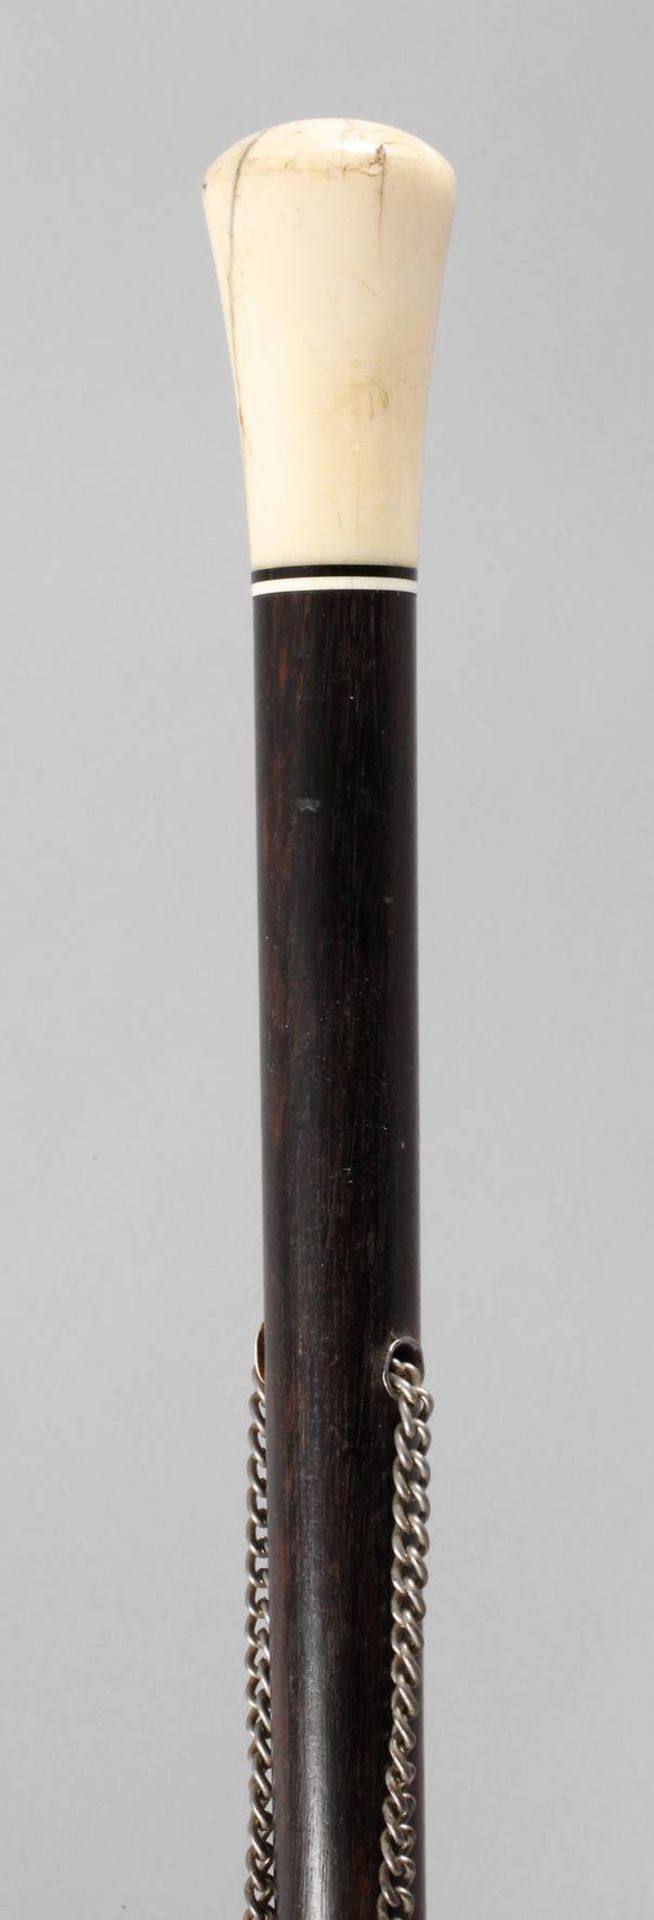 Spazierstock Elfenbeinum 1920, konisch zulaufender Knauf, aus Elfenbein geschnitzt, schmale